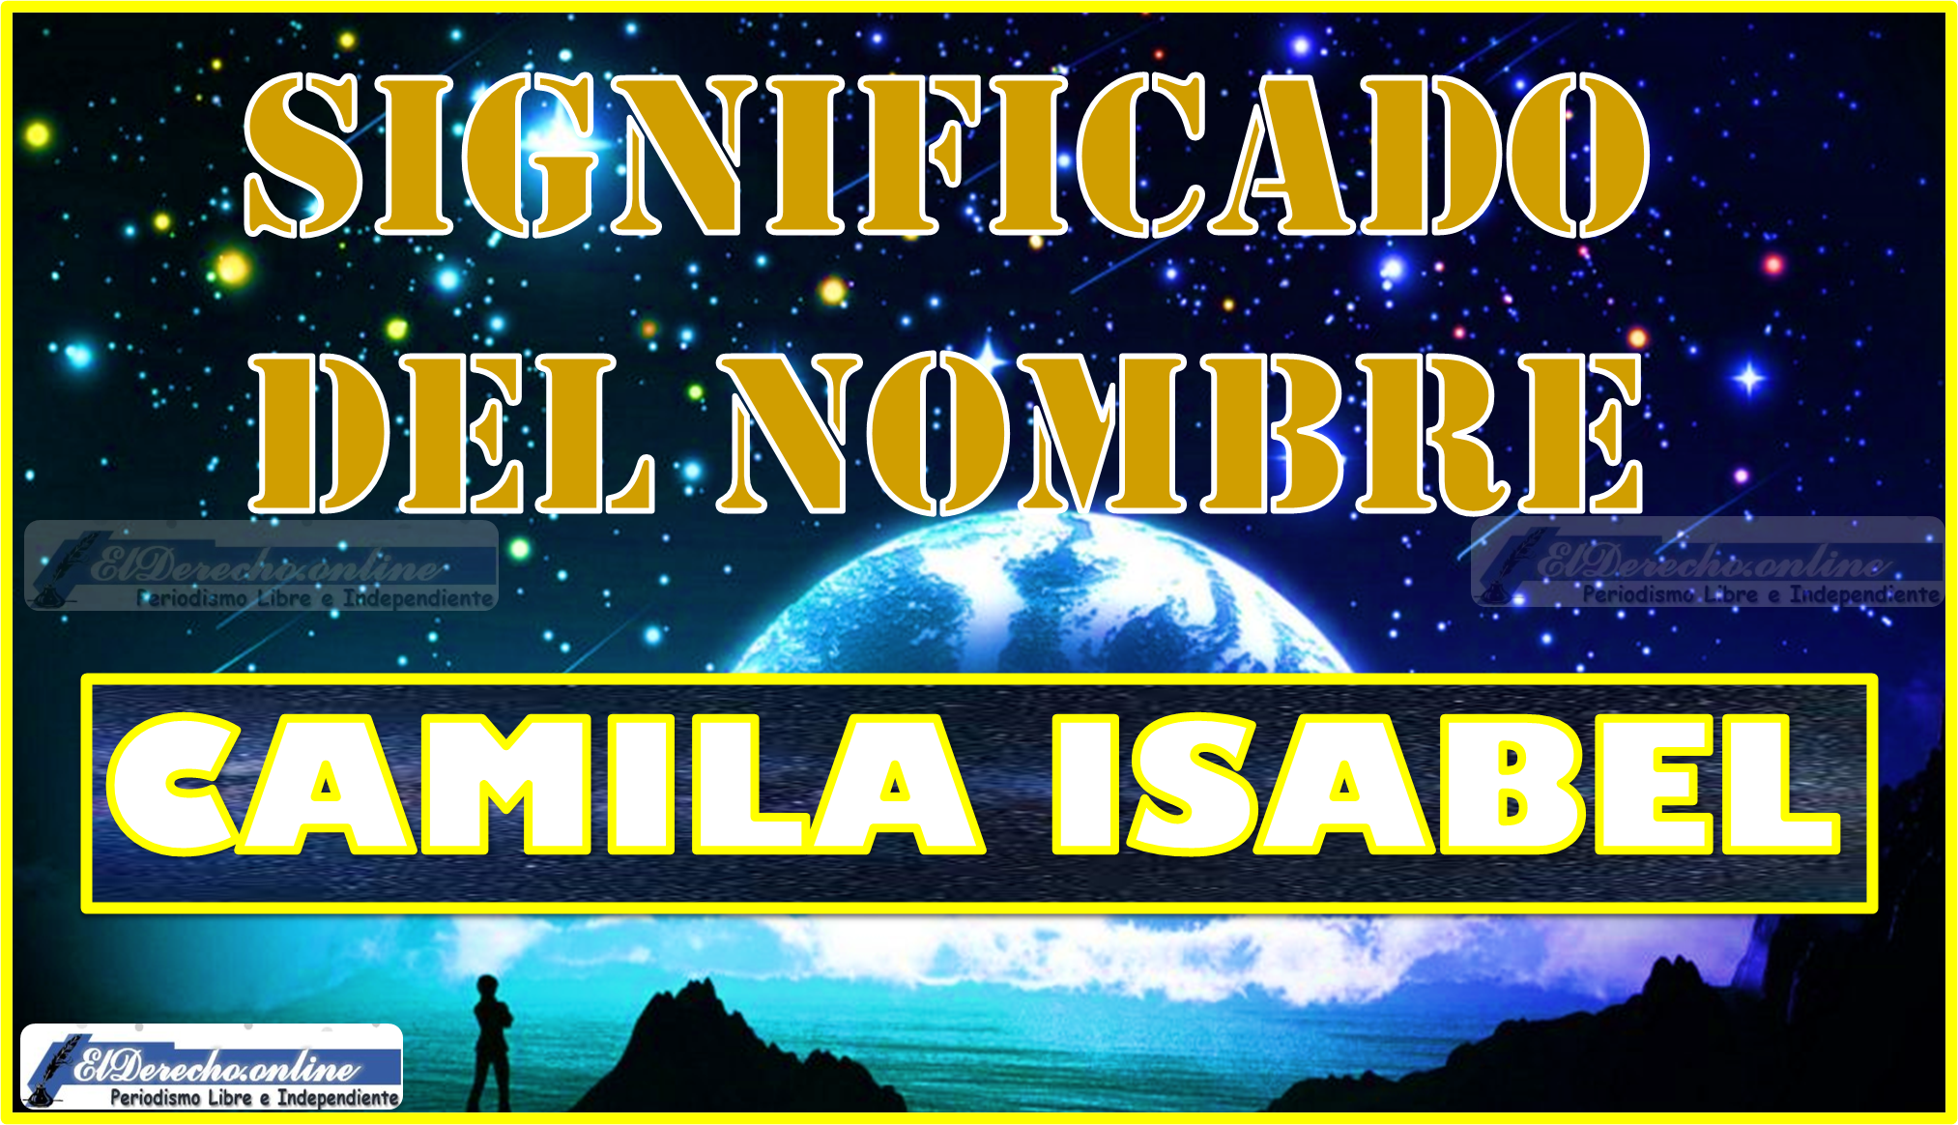 Significado del nombre Camila Isabel, su origen y más